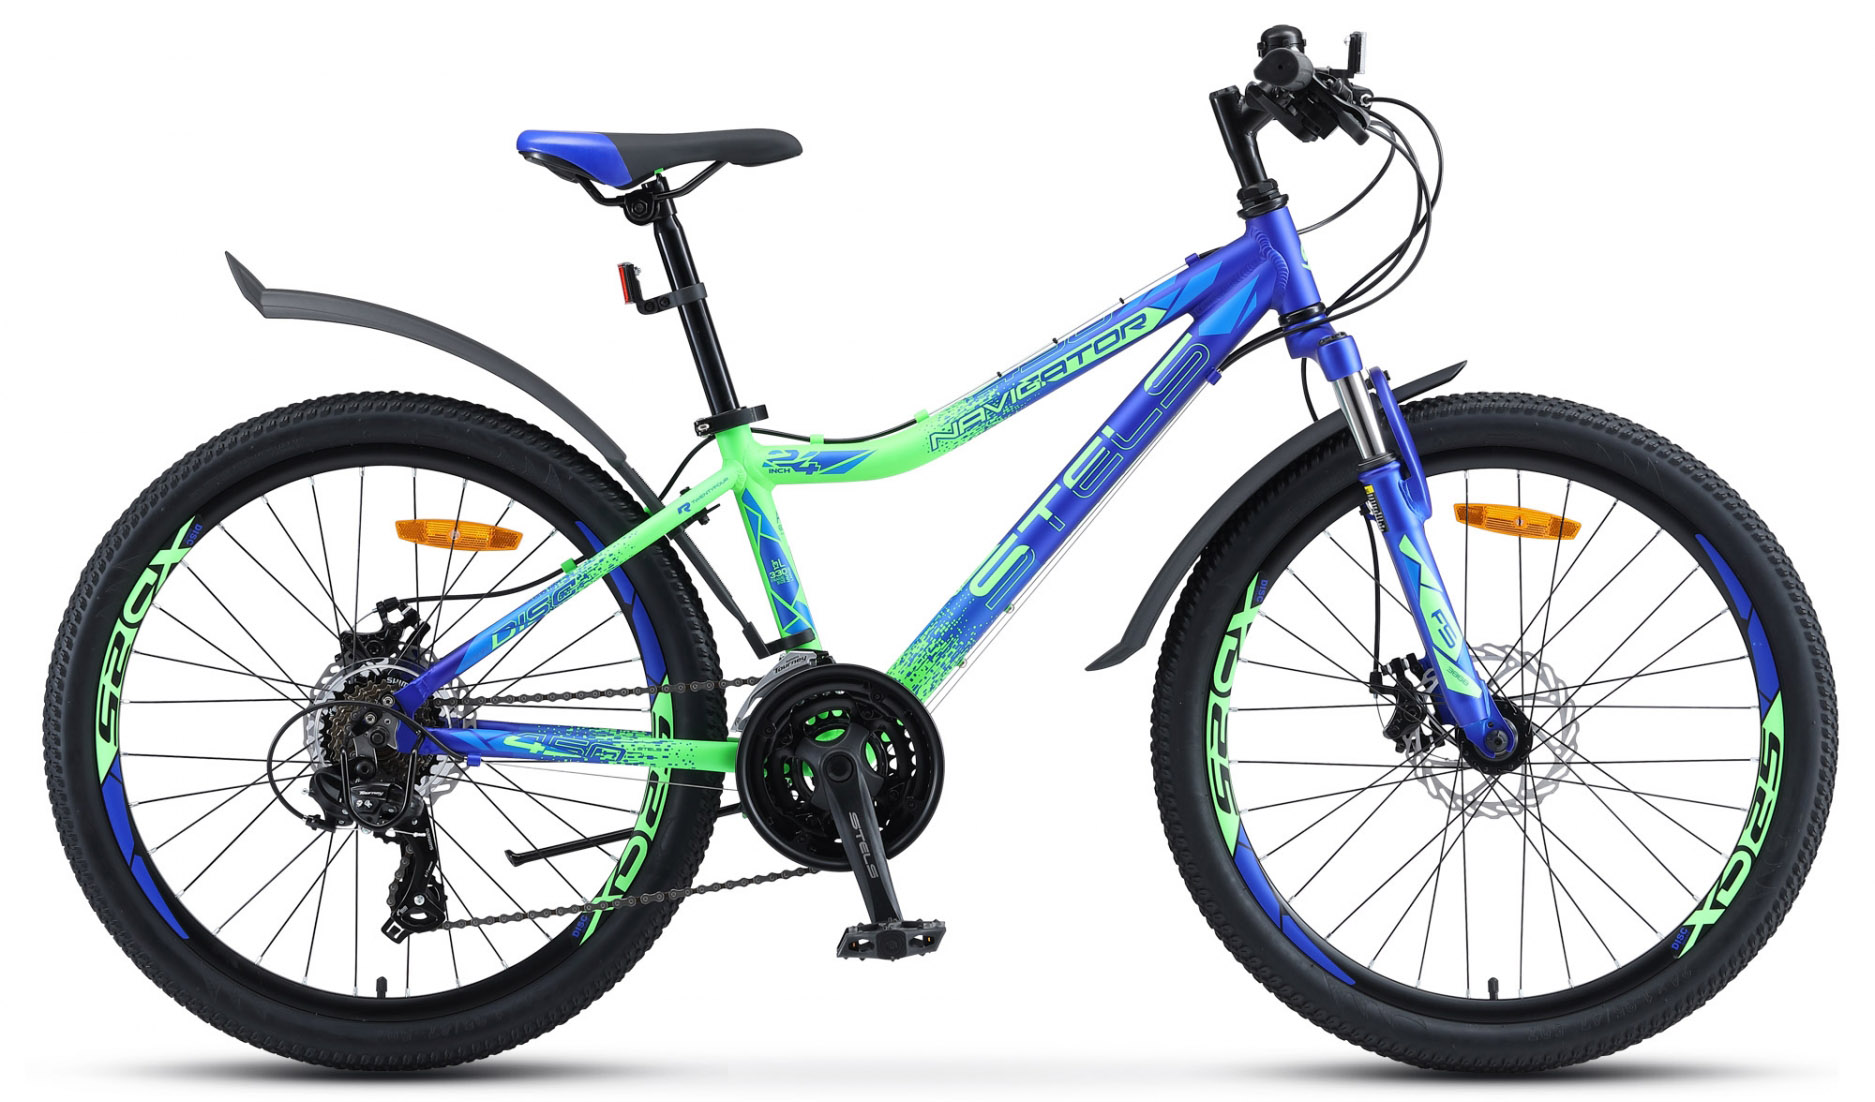  Отзывы о Подростковом велосипеде Stels Navigator 450 MD V030 2020